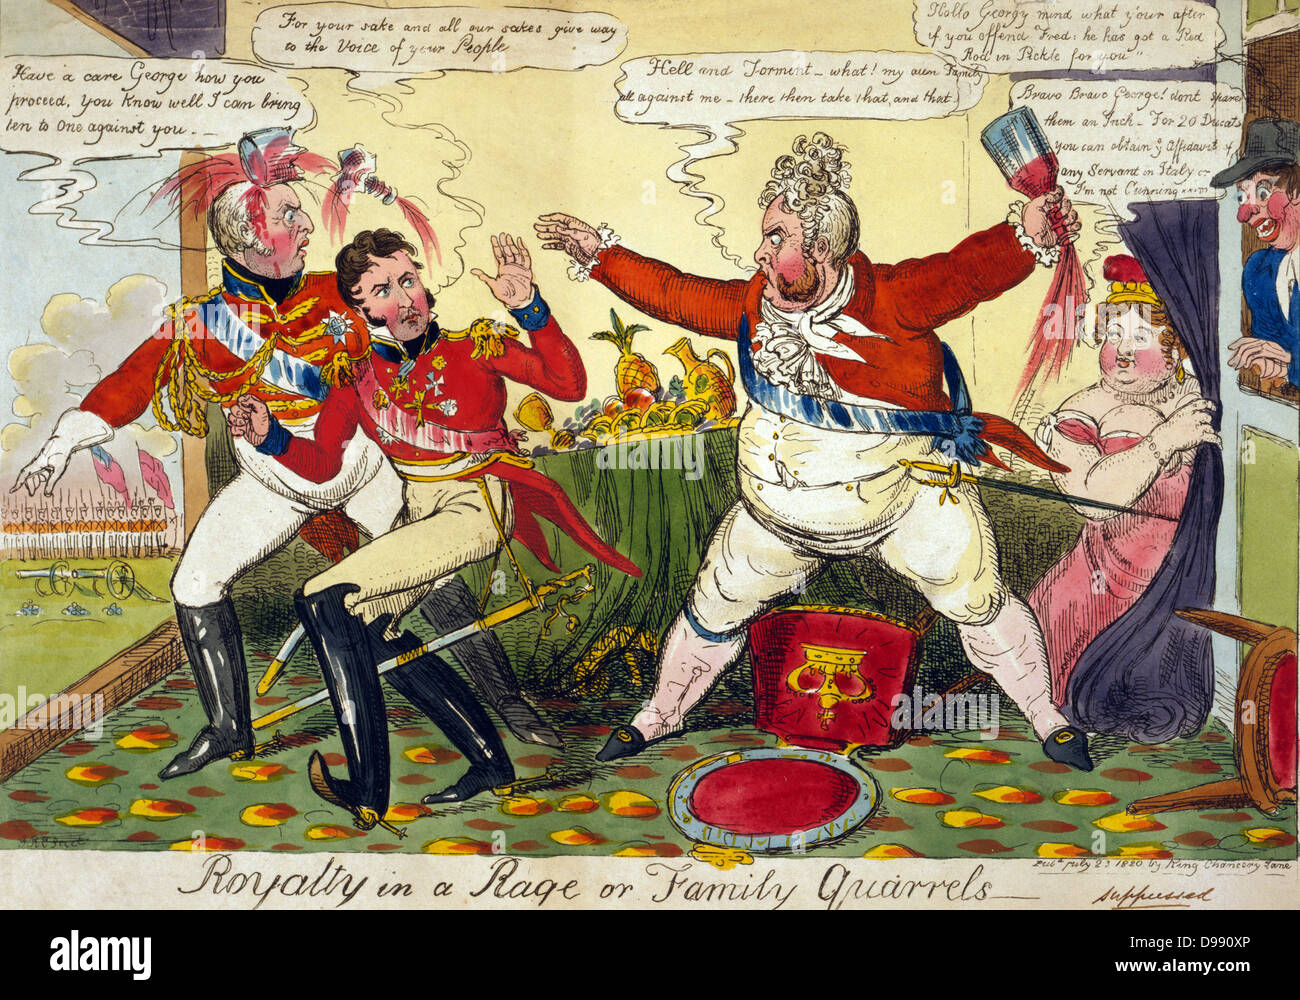 Image dans une rage ou de querelles familiales' Robert Cruikshank, juillet 1820. George IV en colère contre ses frères Frederick et William, peu disposés à le soutenir dans la procédure de divorce contre Queen Caroline. Eau-forte. La Caricature Banque D'Images